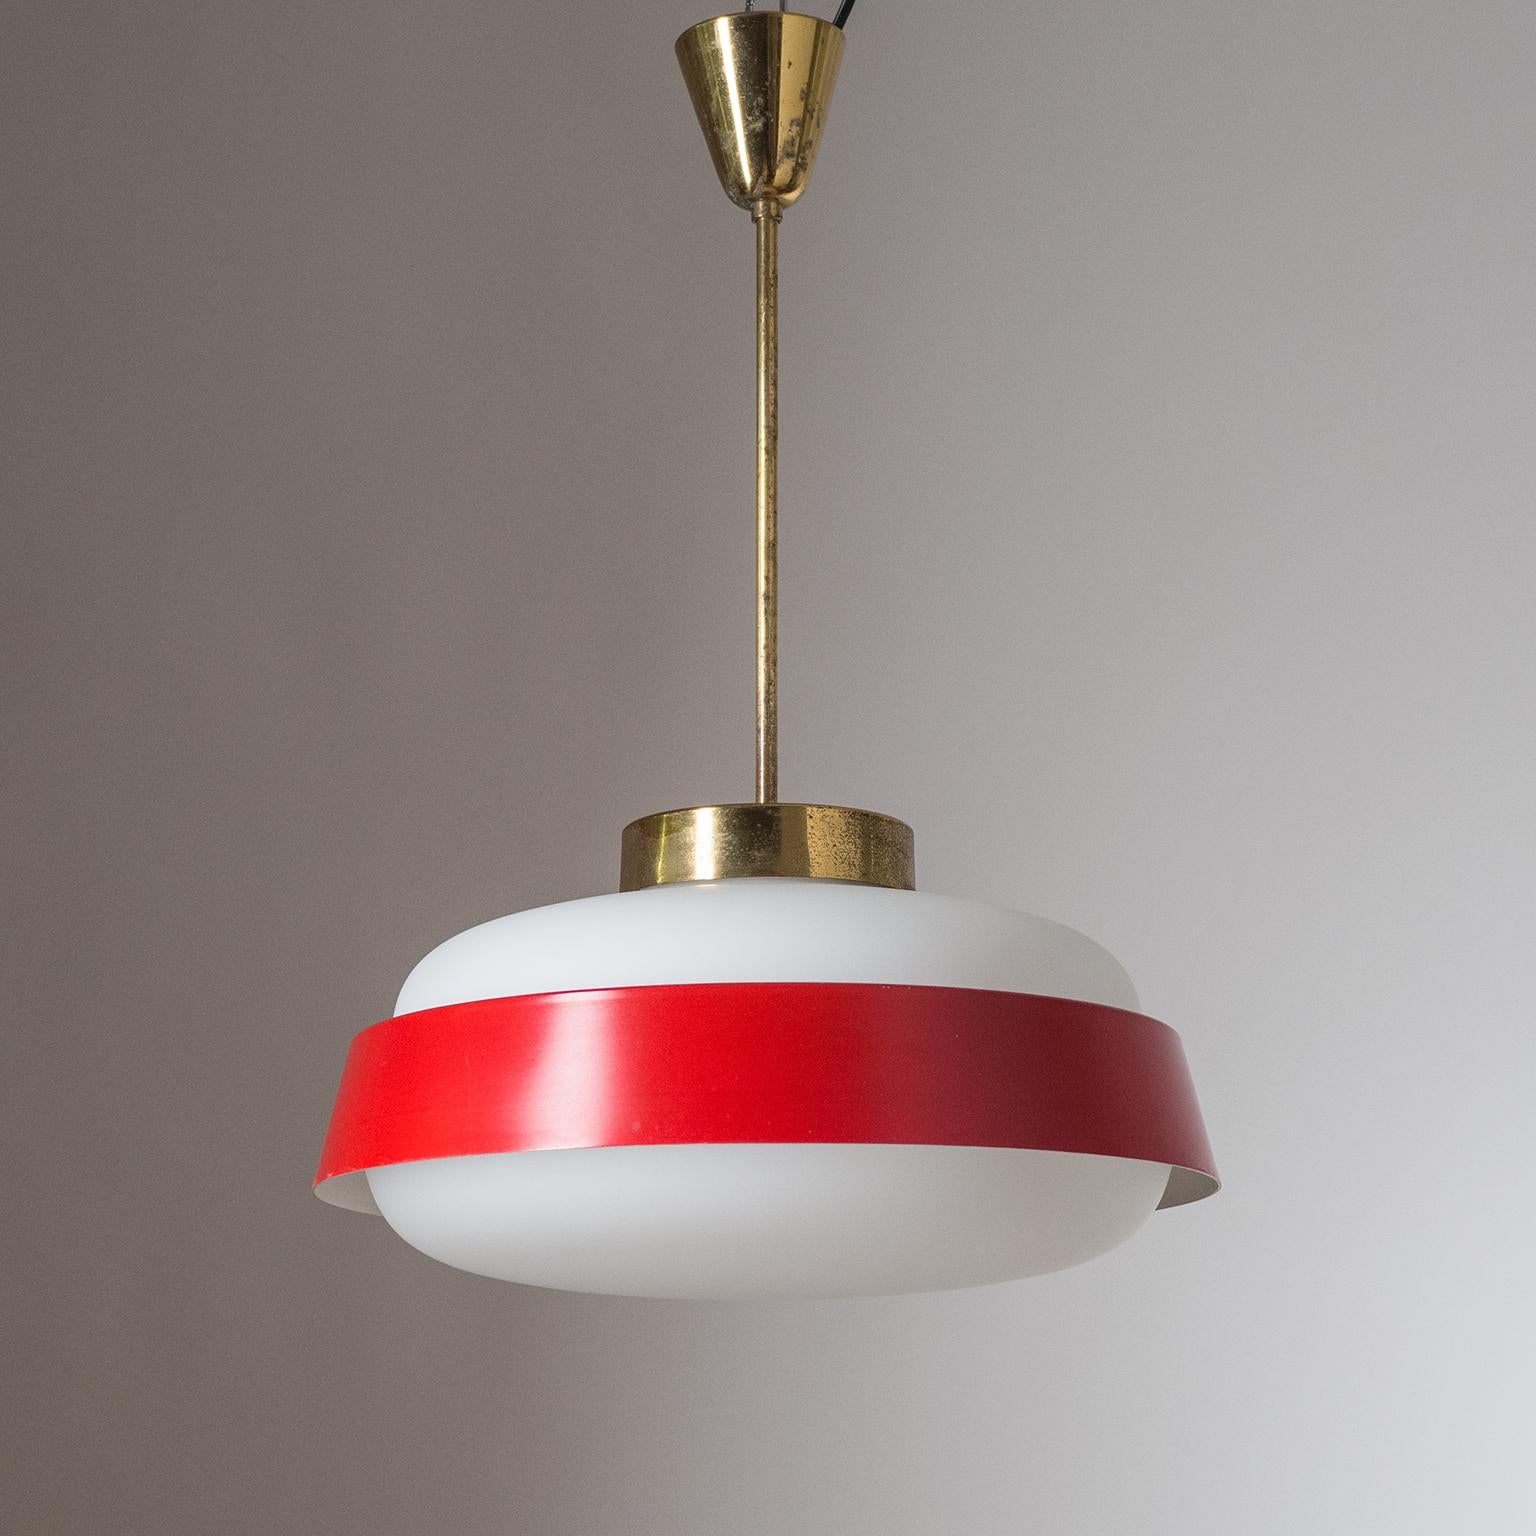 Fine lampe de plafond italienne des années 1950-1960. Un grand diffuseur en verre satiné avec un abat-jour 